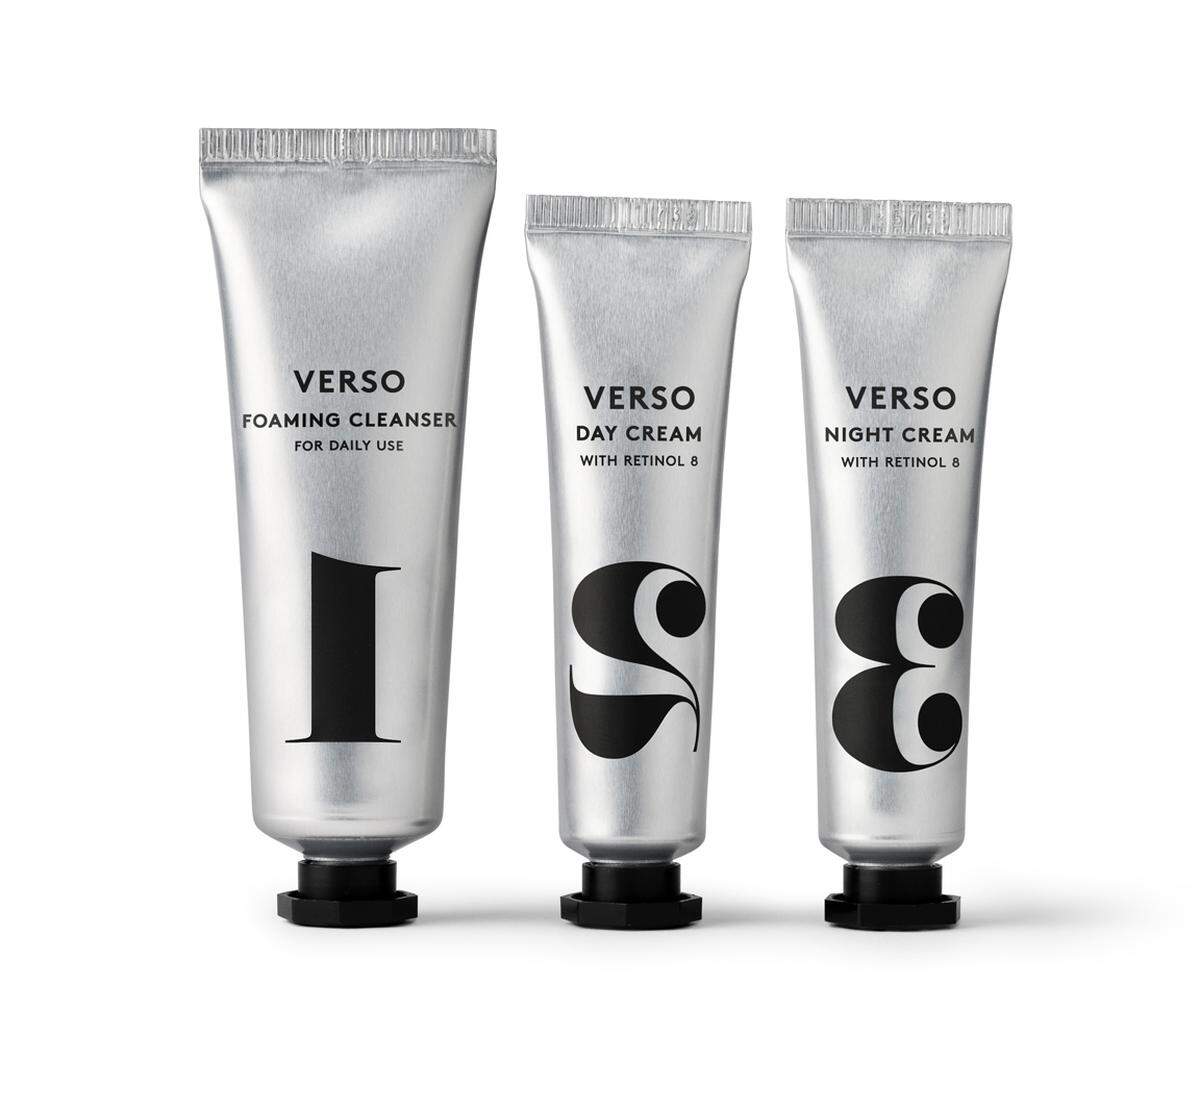 Verso, eine Gesichtspflegelinie aus Schweden, will die sichtbaren Zeichen der Hautalterung unter anderem mit Retinol zurückdrehen. Die nummerierten Pflegeprodukte gibt es bei OXA Beauty, Werdertorgasse 4, 1010 Wien.